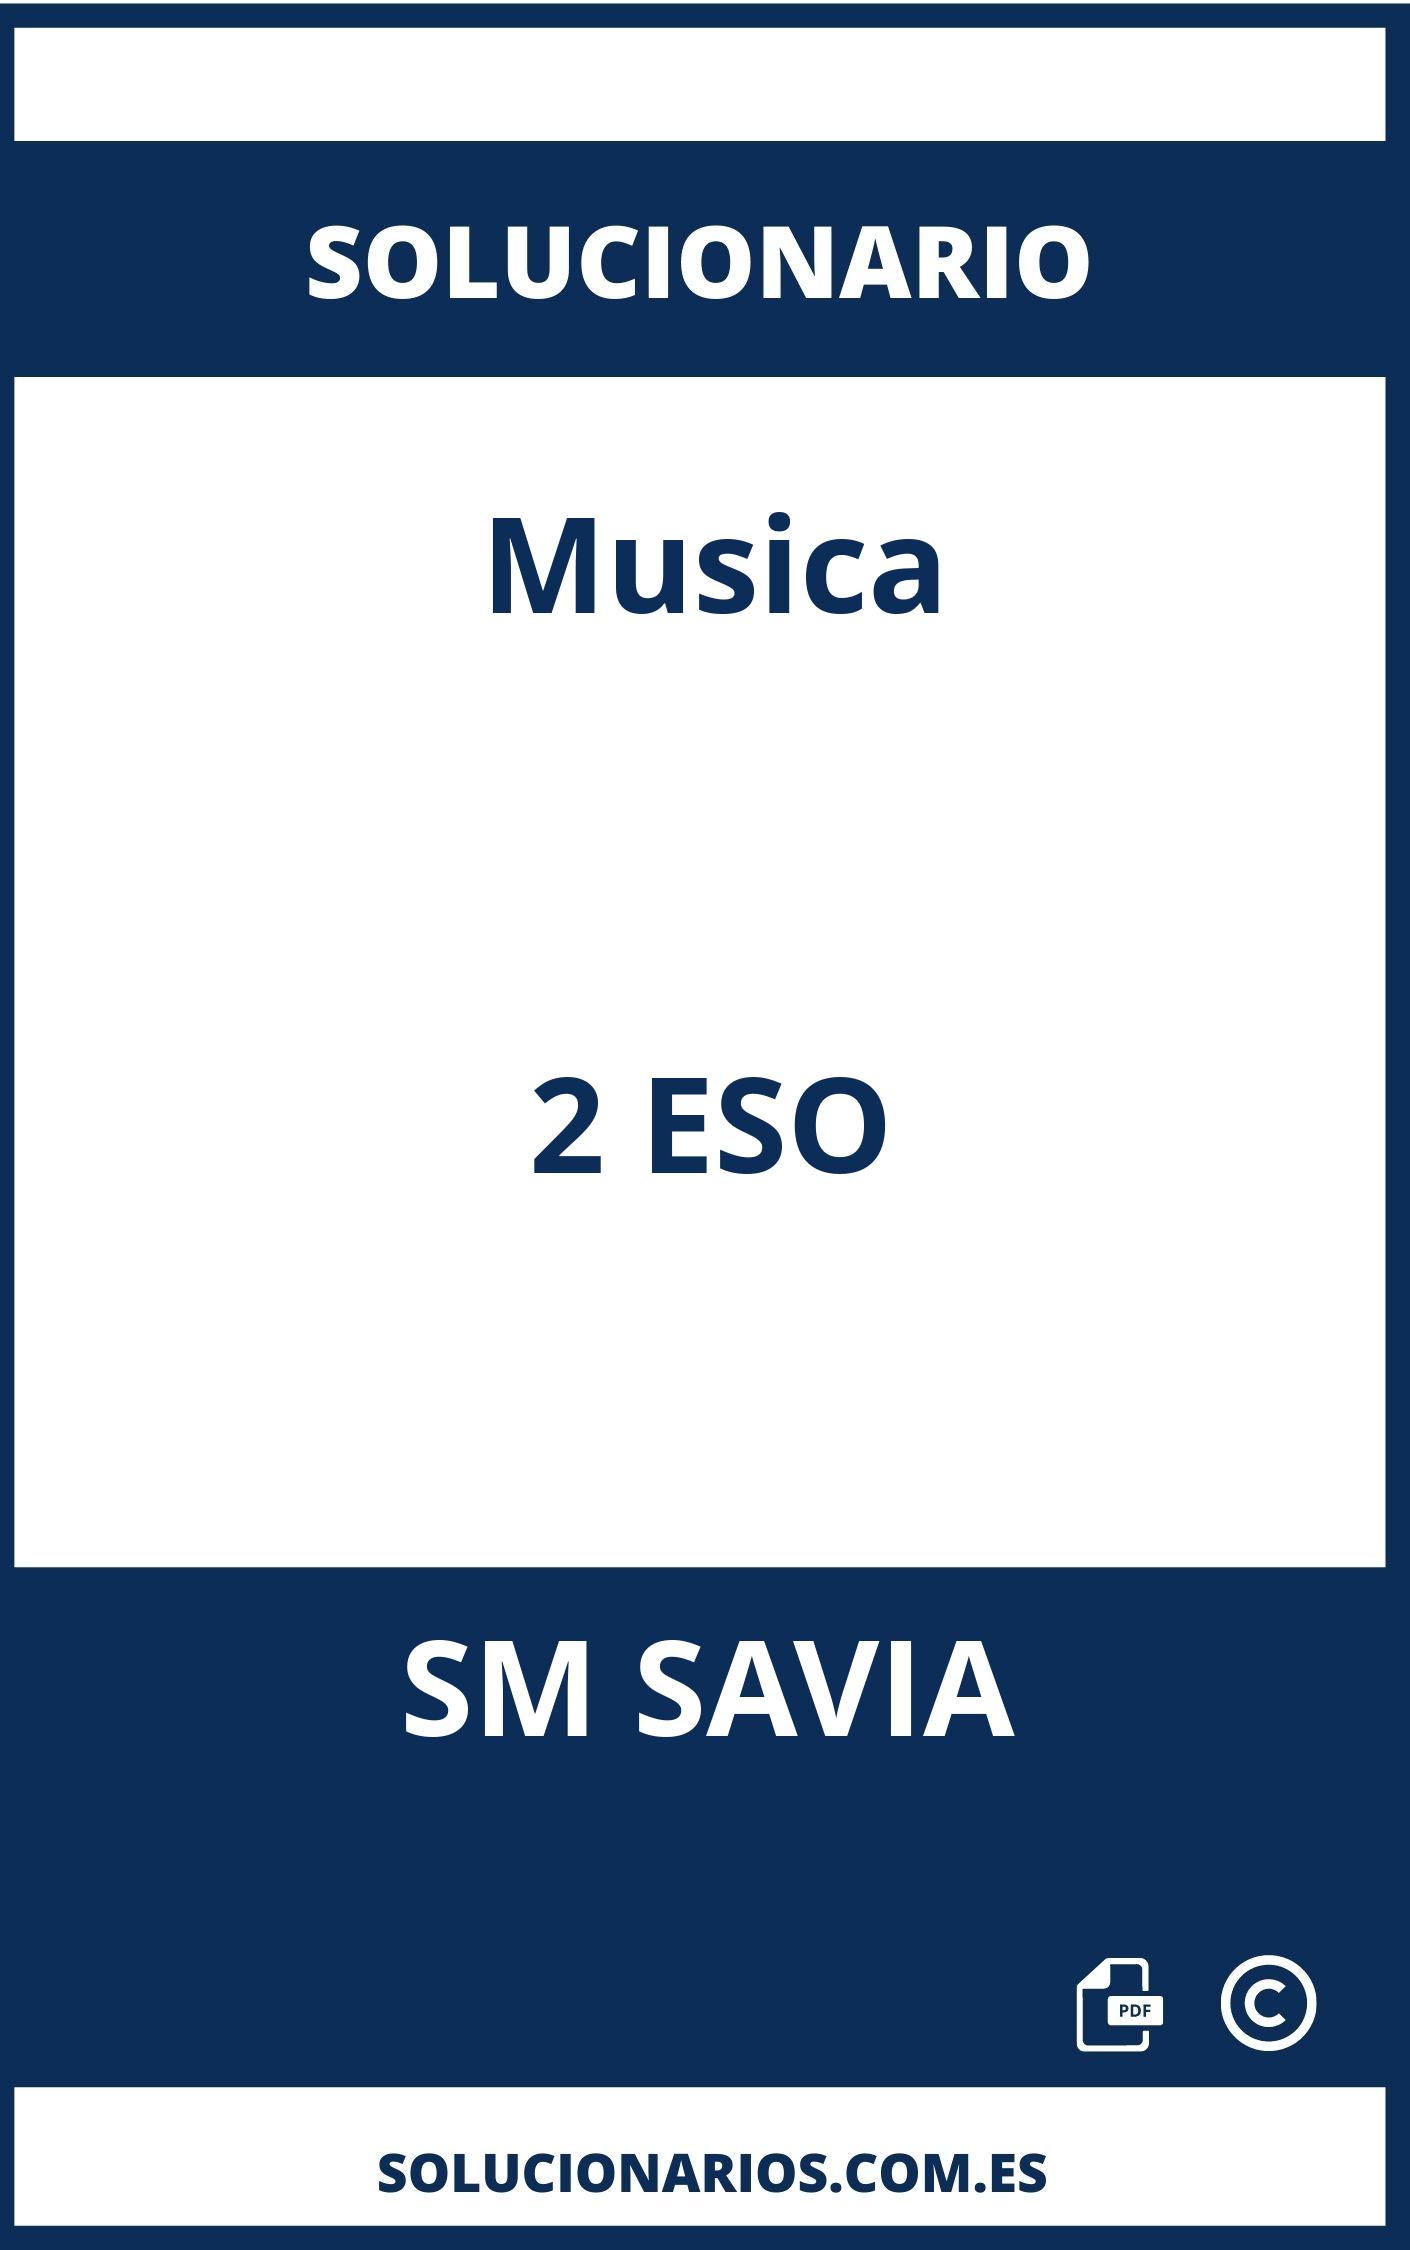 Solucionario Musica 2 ESO SM SAVIA